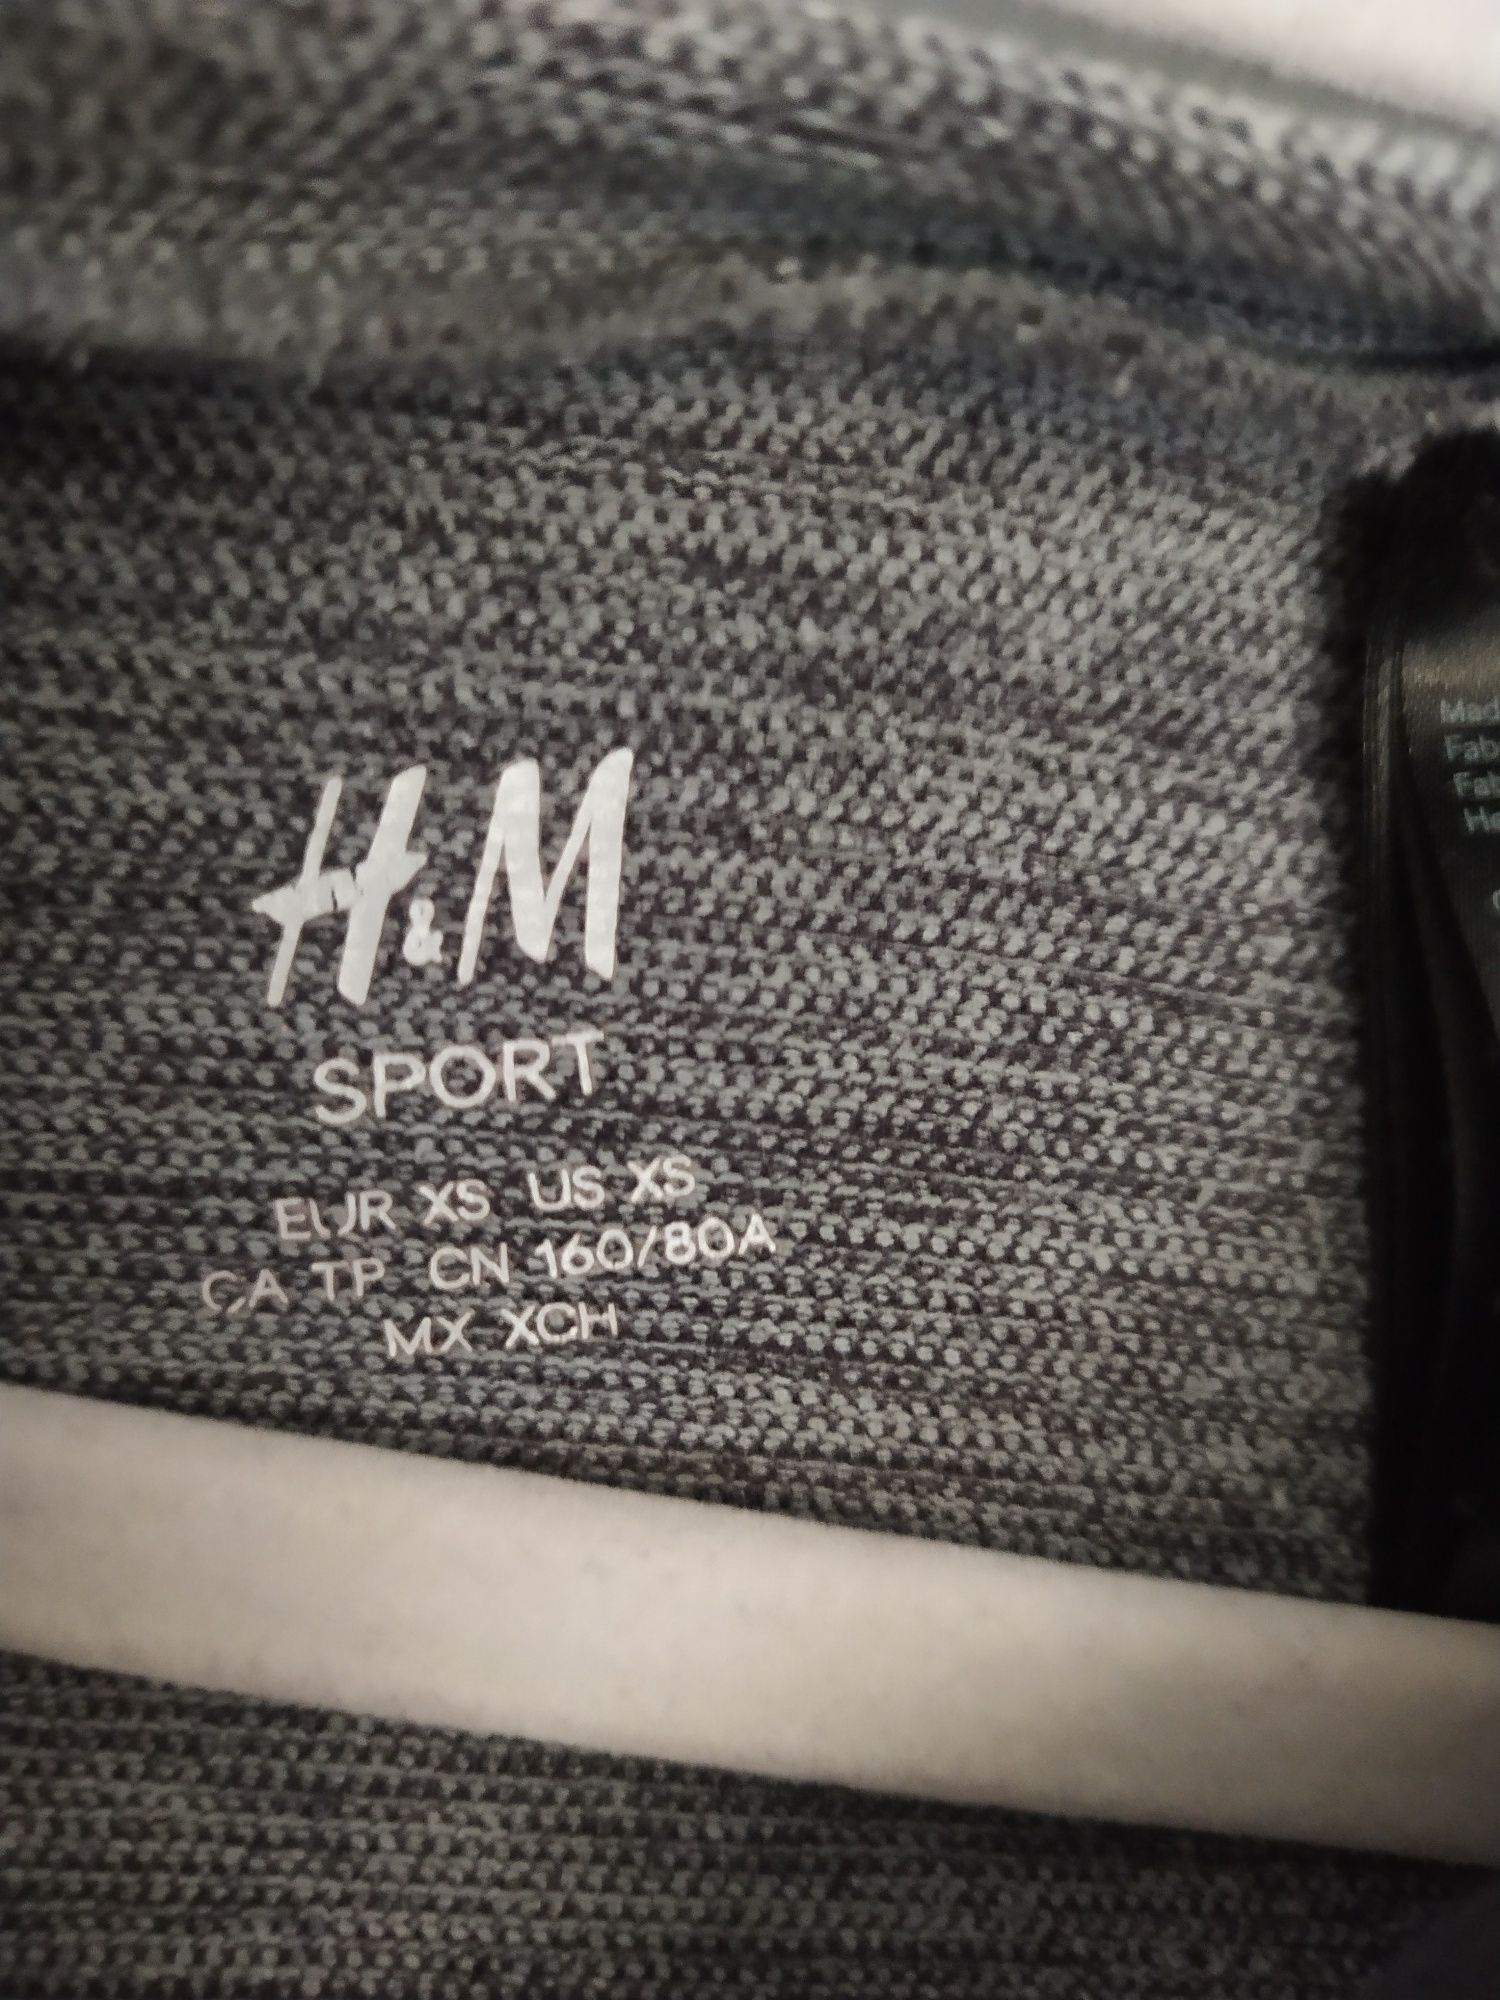 Bluza sportowa chłopięca H&M sport r xs